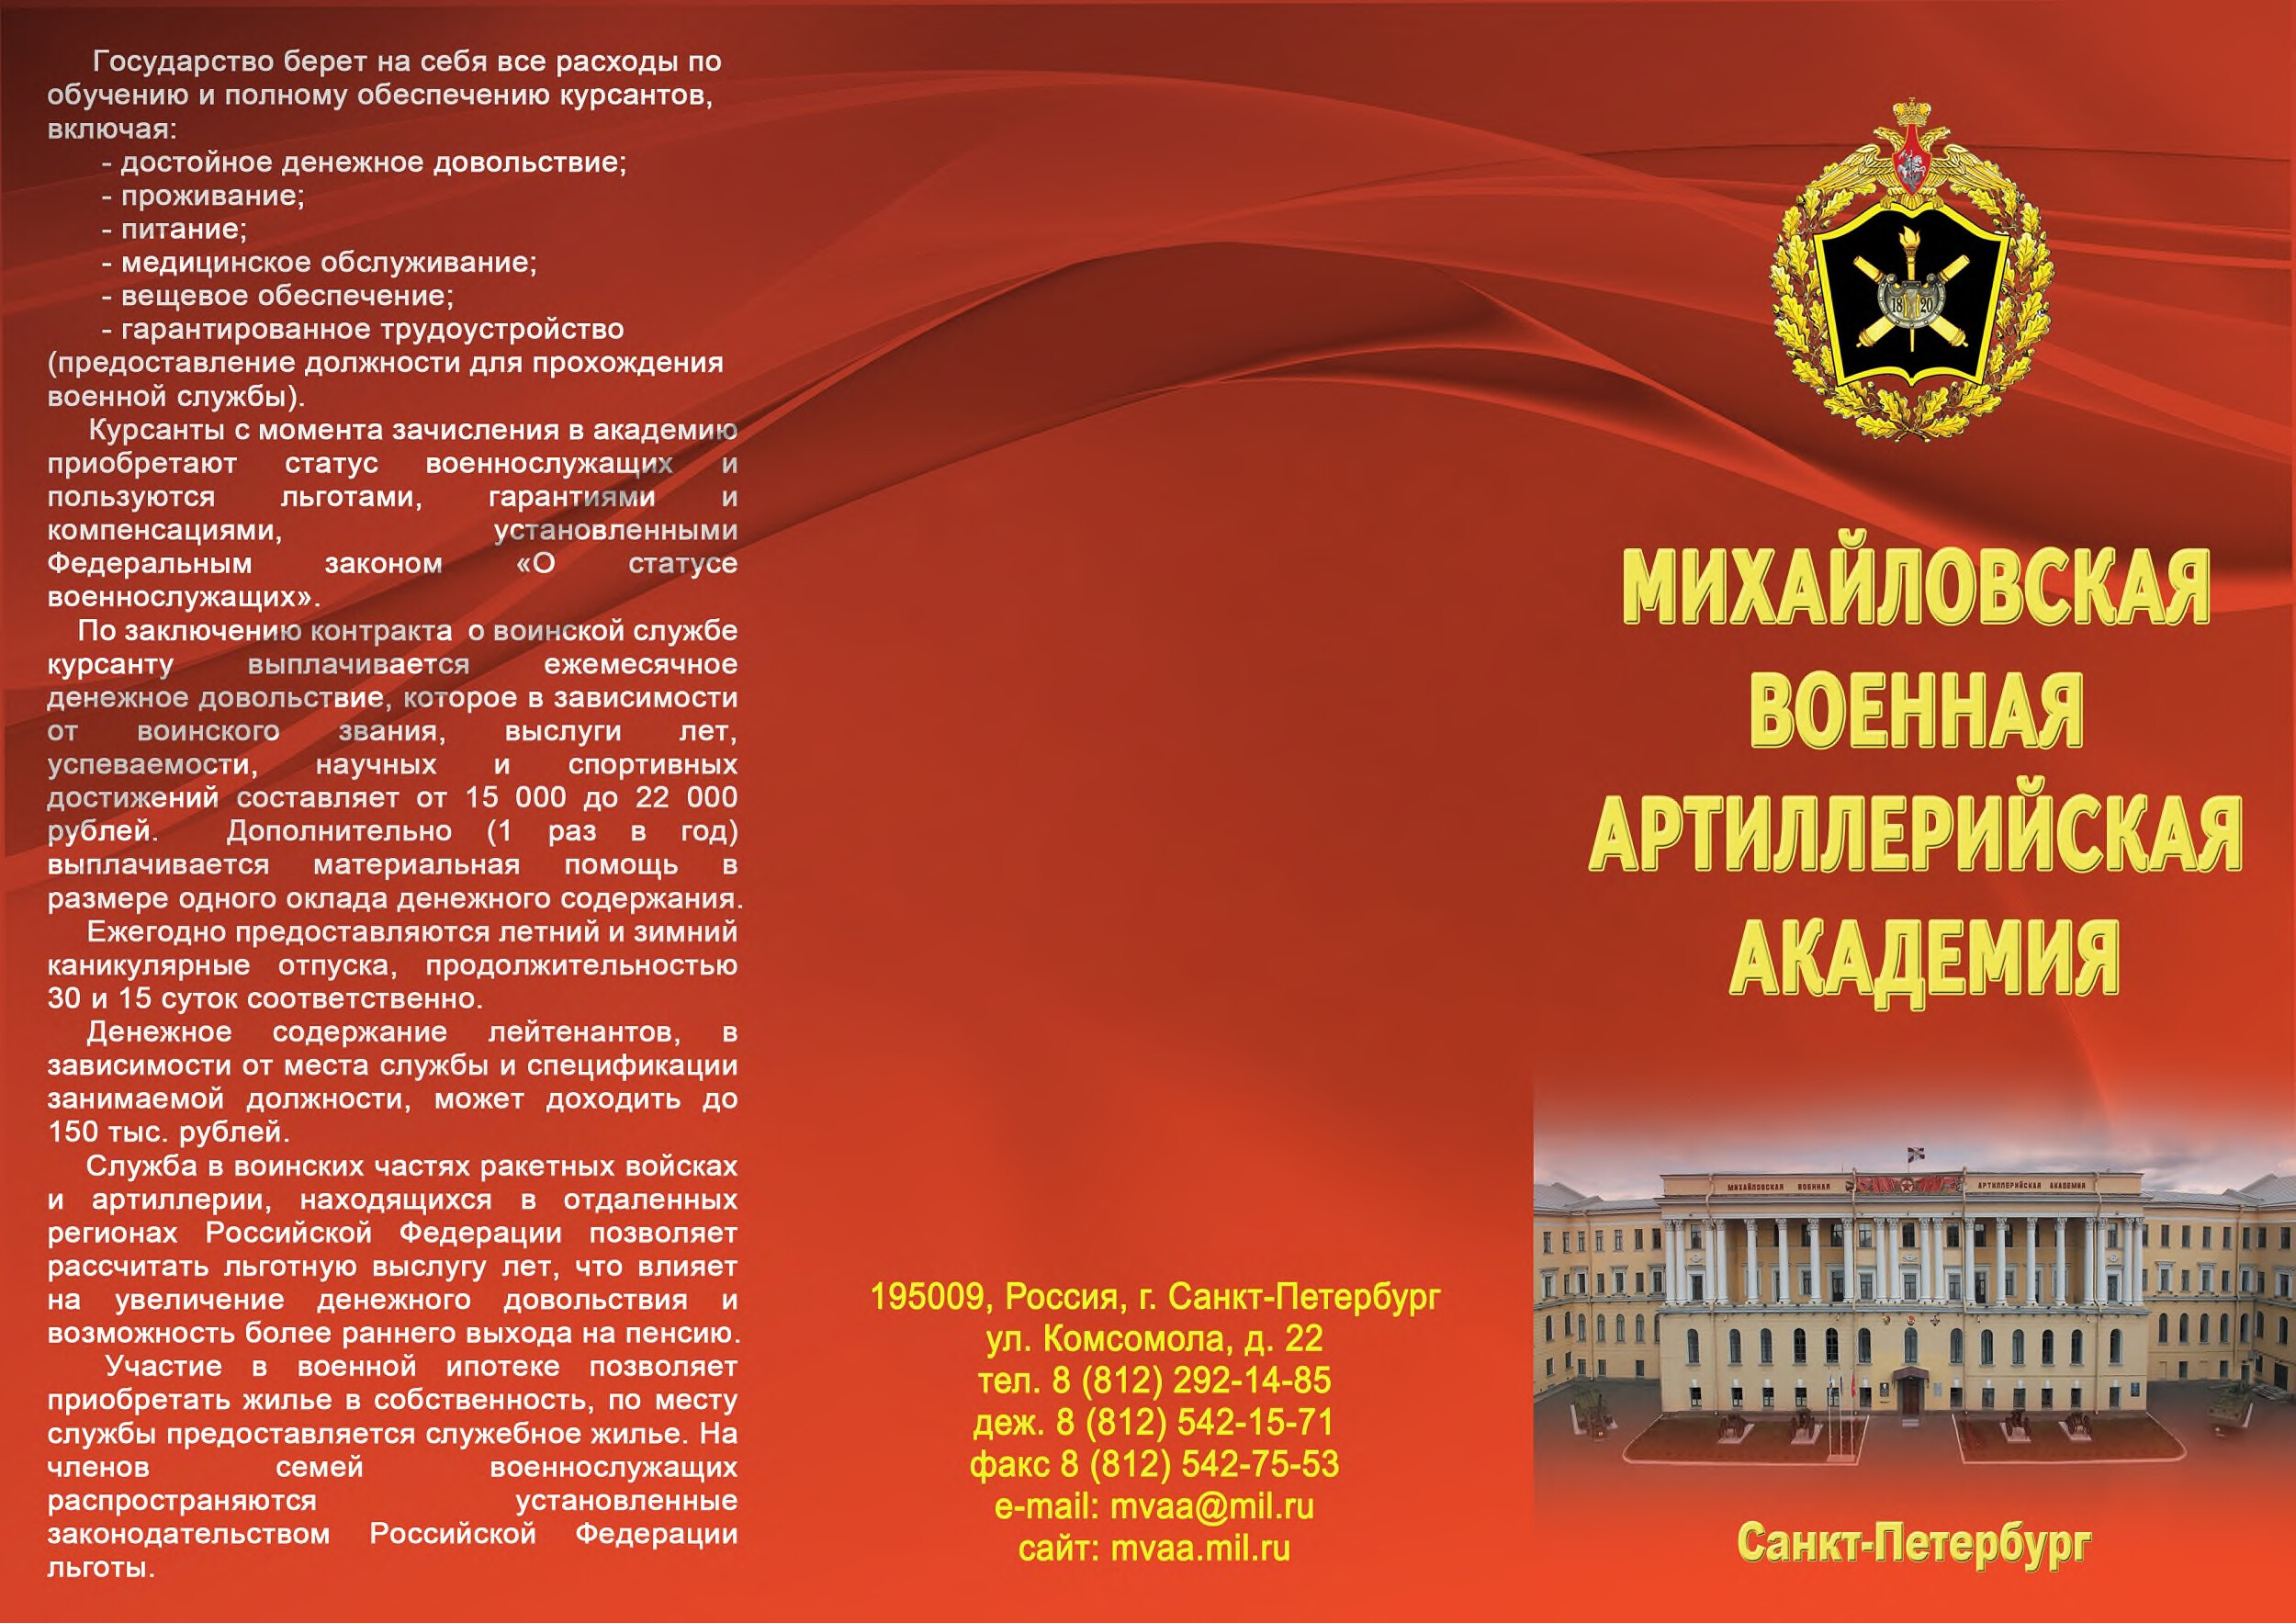 Михайловская военная артиллерийская академия 7